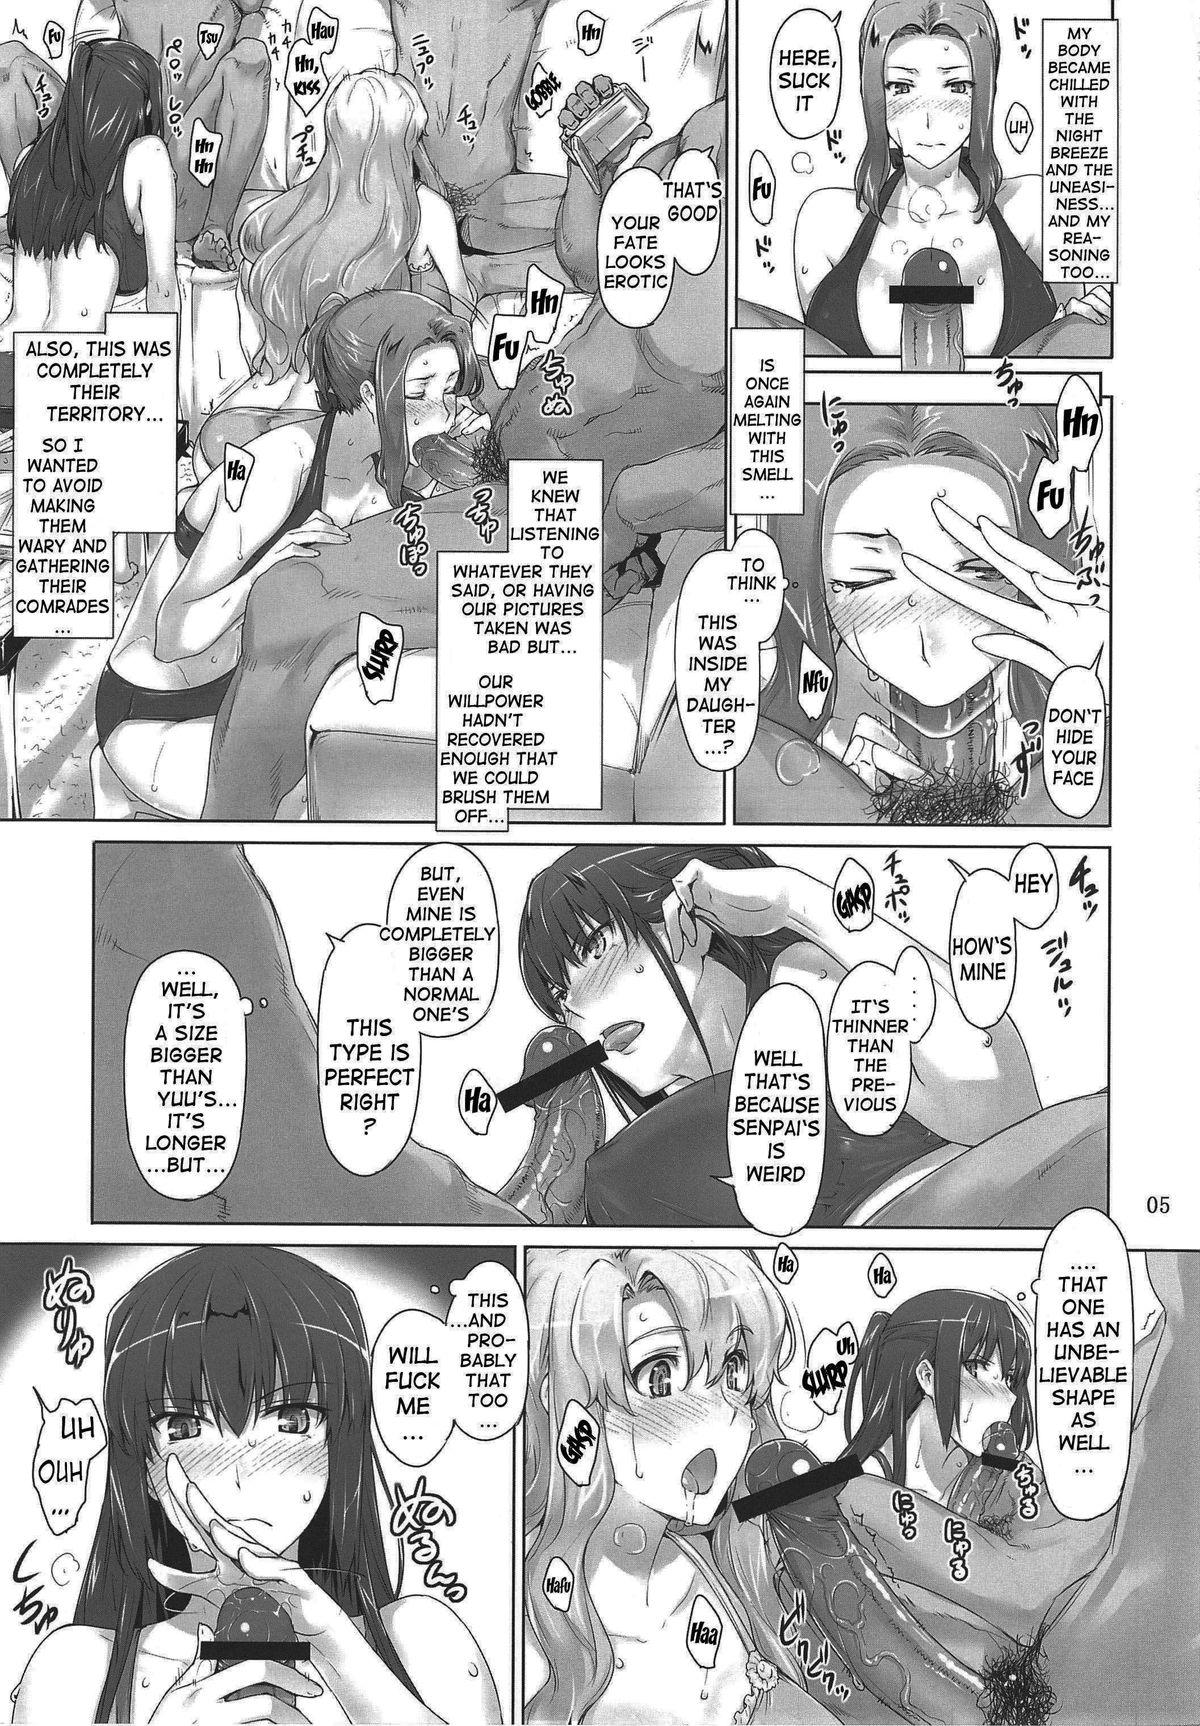 Face Mtsp - Tachibana-san's Circumstabces WIth a Man 3 Putaria - Page 4